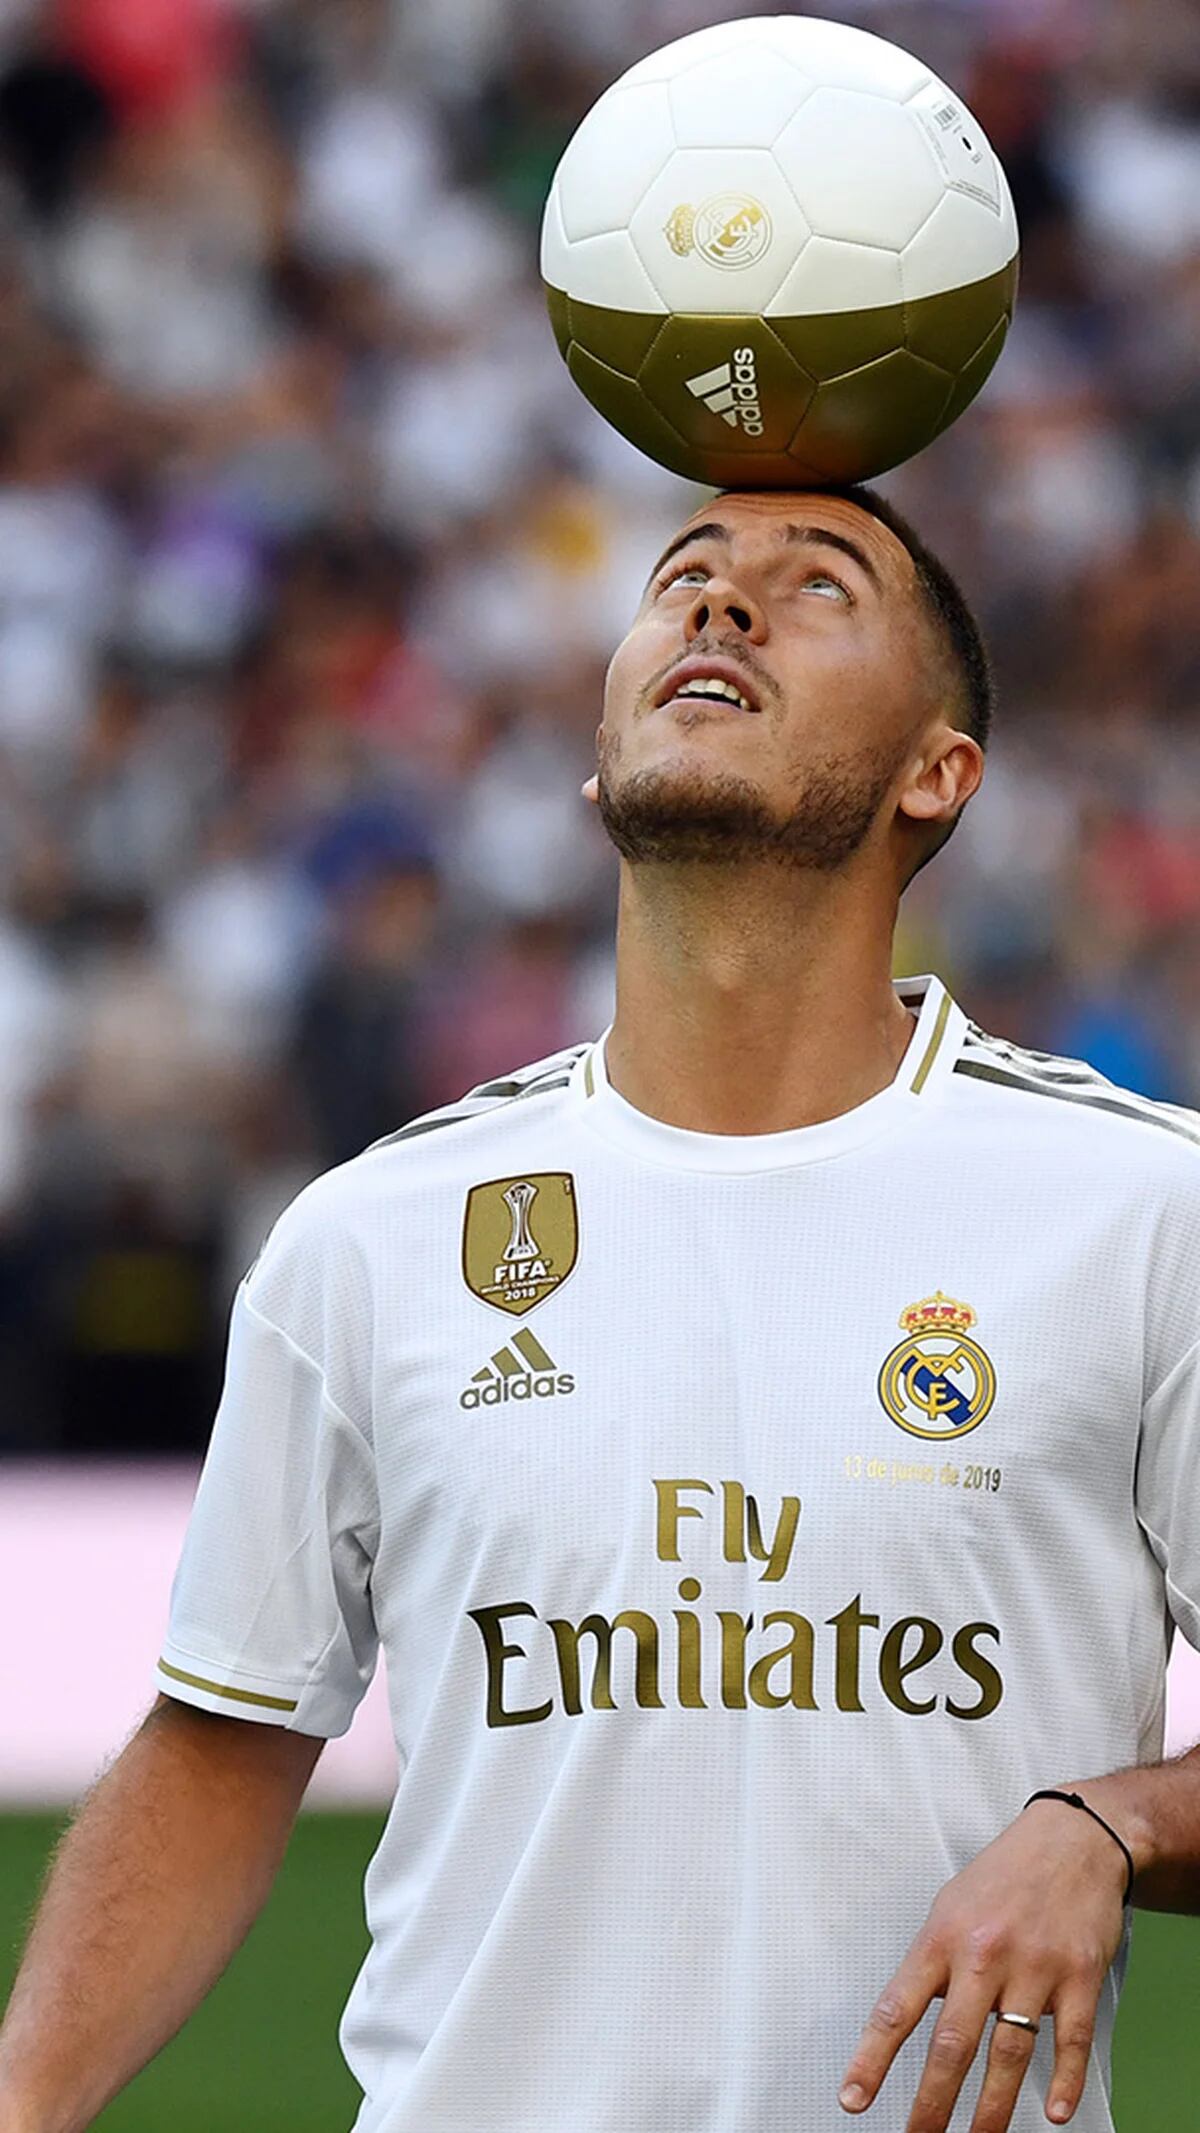 El Real Madrid Eden Hazard: el fichaje galáctico busca cubrir el vacío que dejó Cristiano Ronaldo - Infobae